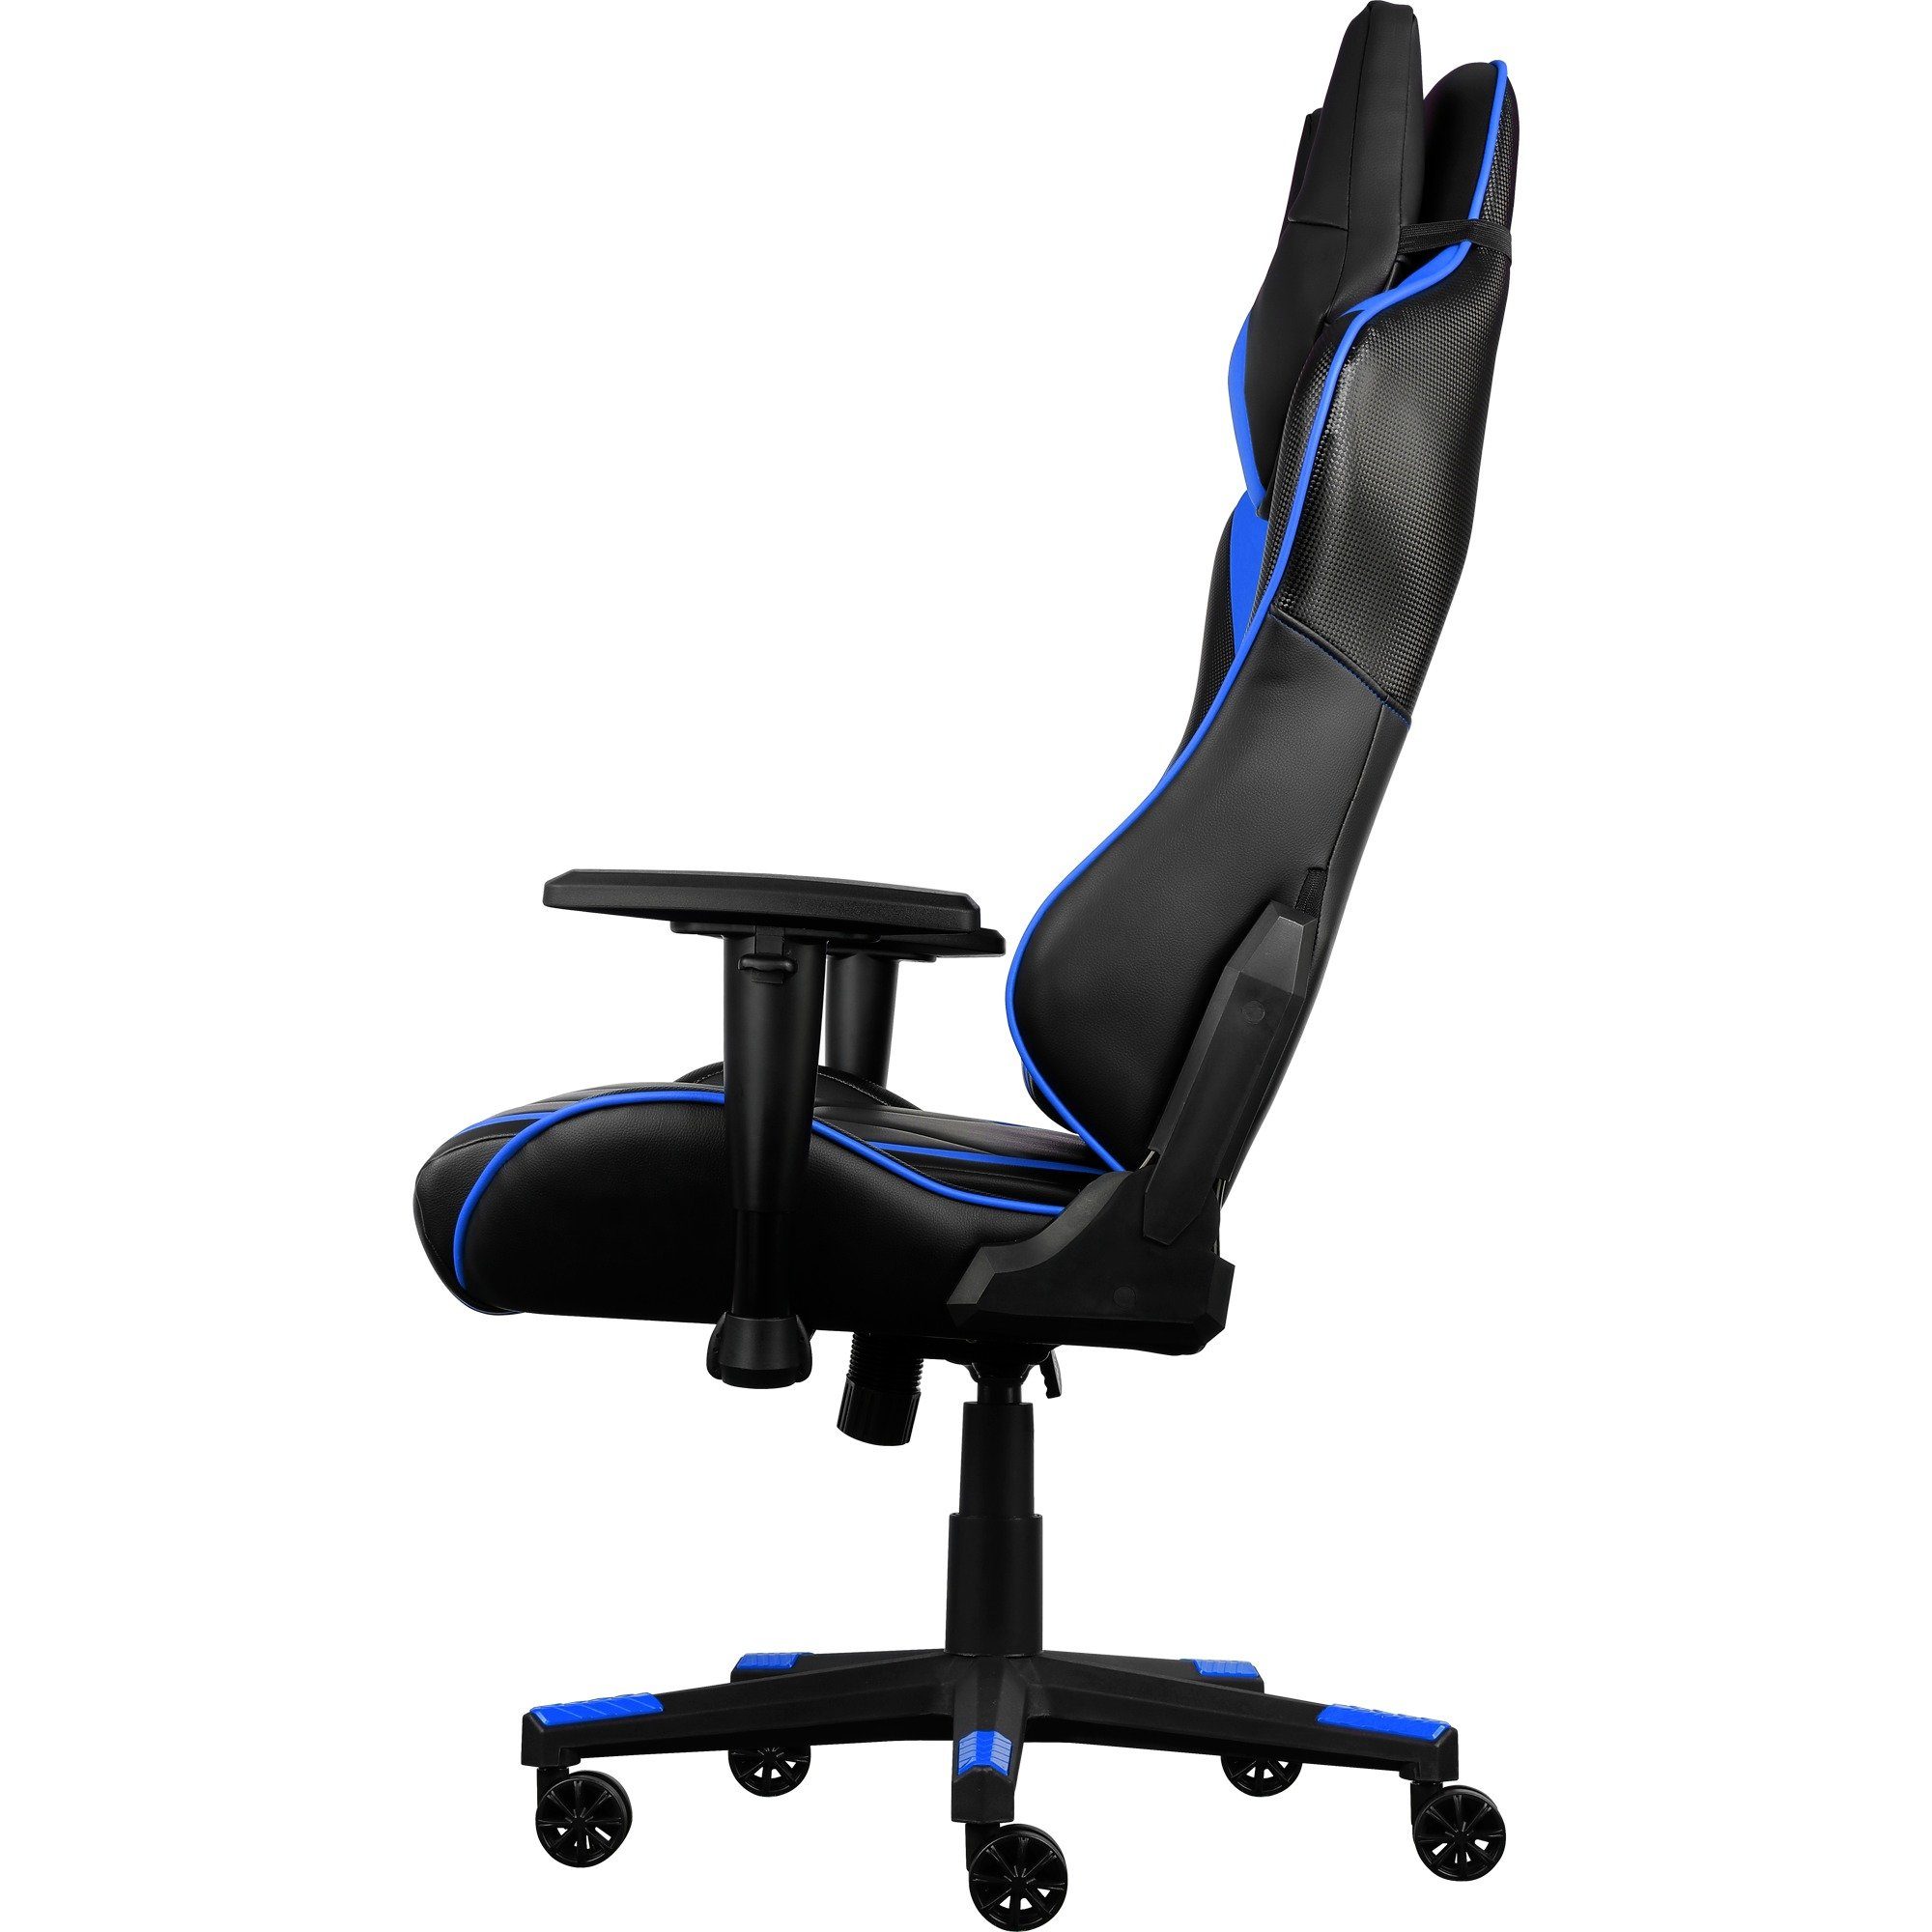 Chair, AC220 Gaming-Stuhl AIR Aerocool Gaming Aerocool schwarz/blau Gaming-Stuhl